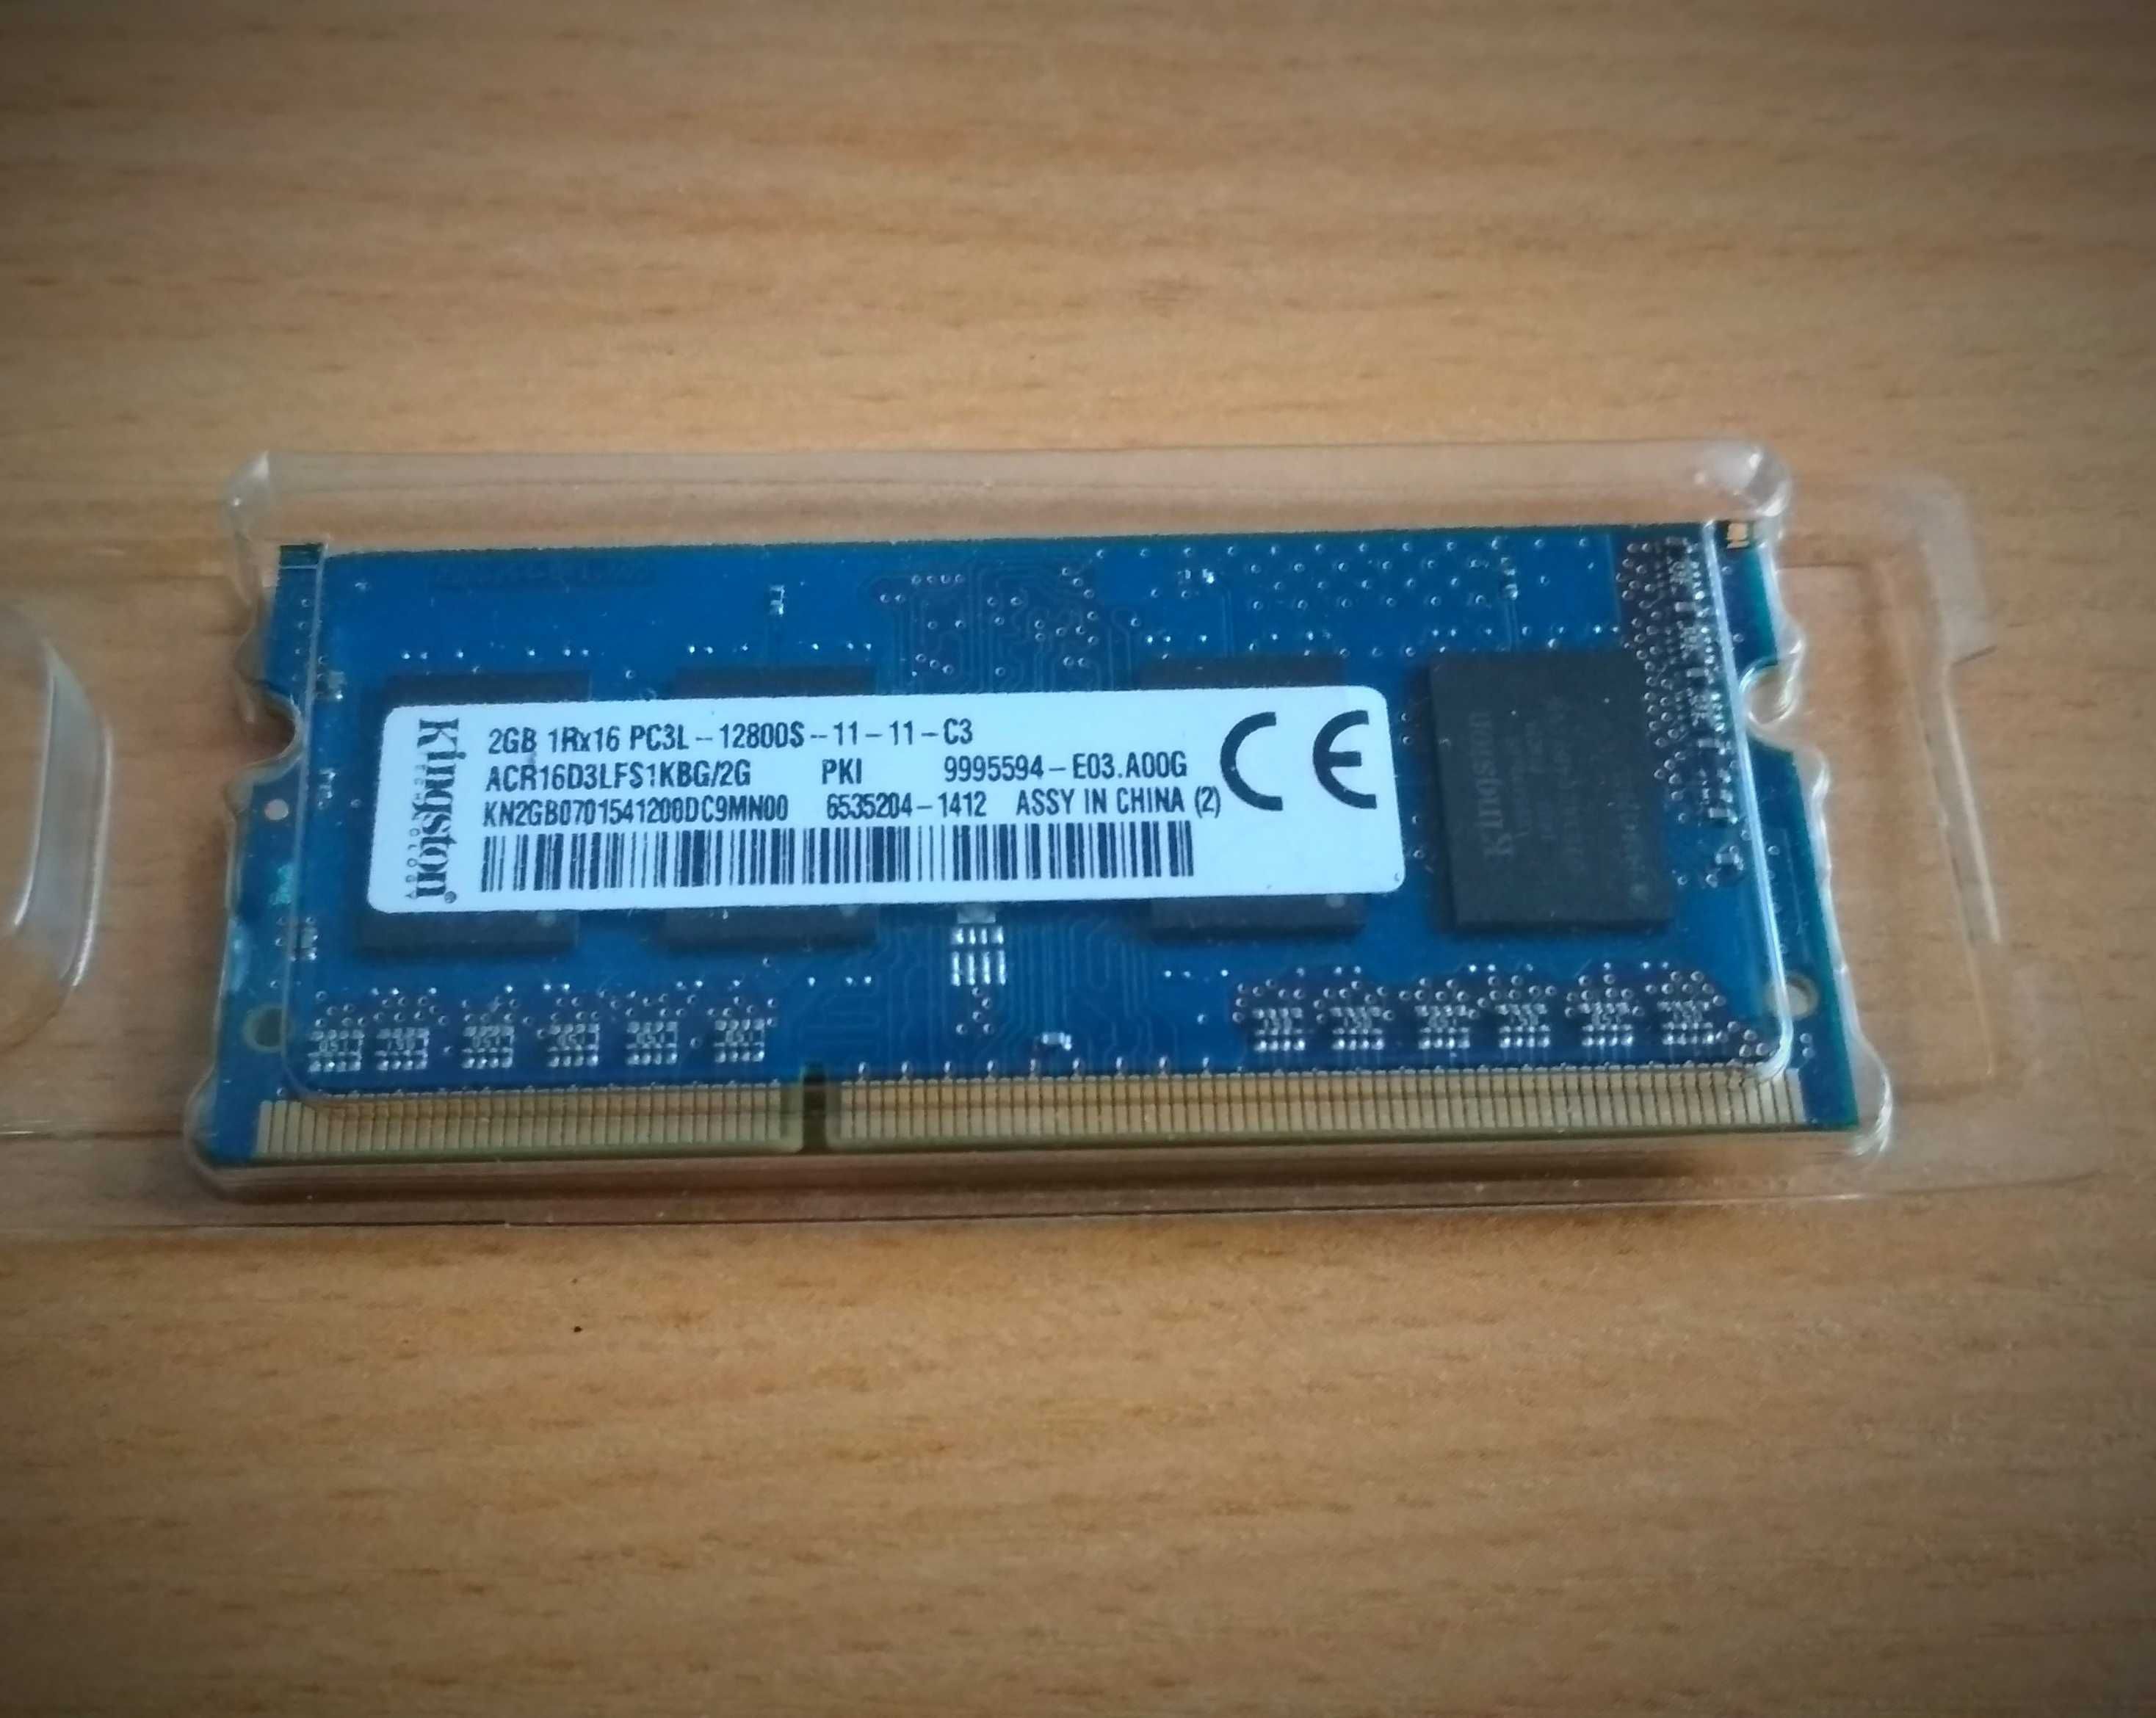 ОЗУ Оперативна пам'ять DDR3 1,2,4 гіга для ноутбука оновлено 28 чісла